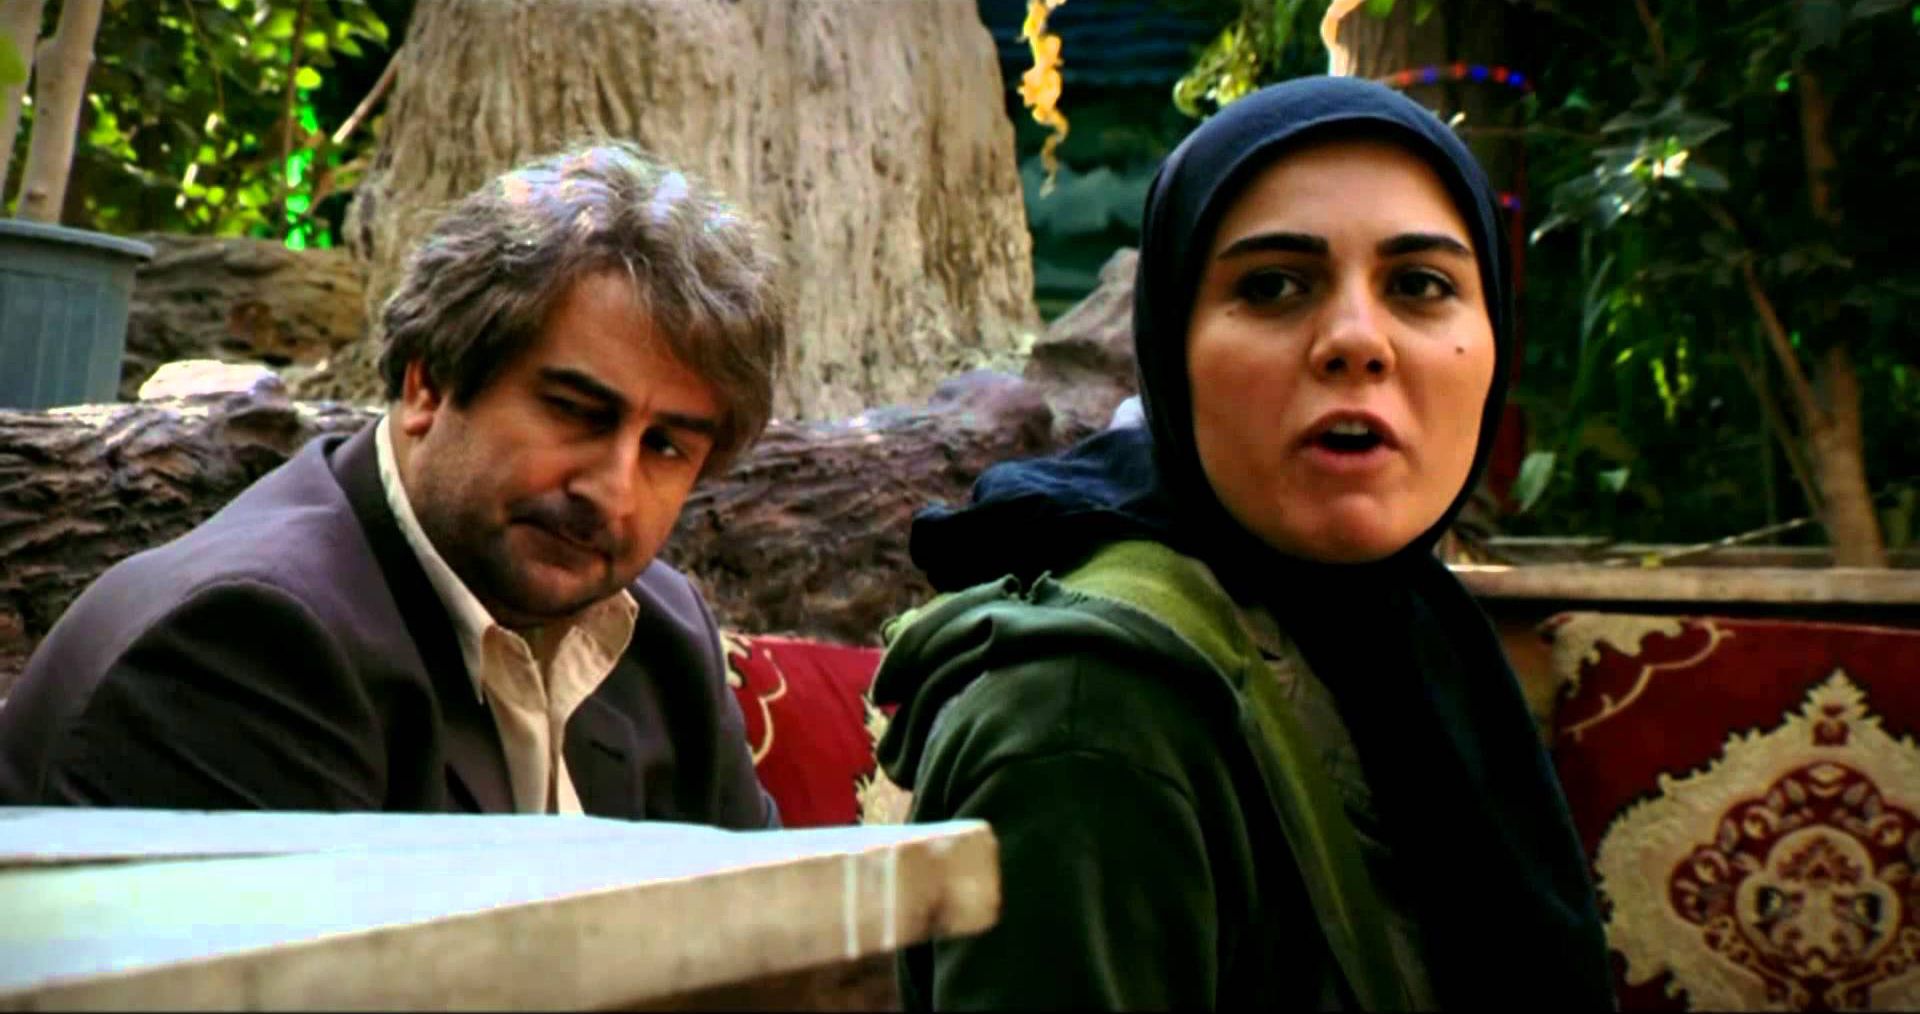  سریال تلویزیونی آوای باران با حضور مهران احمدی و آزاده زارعی